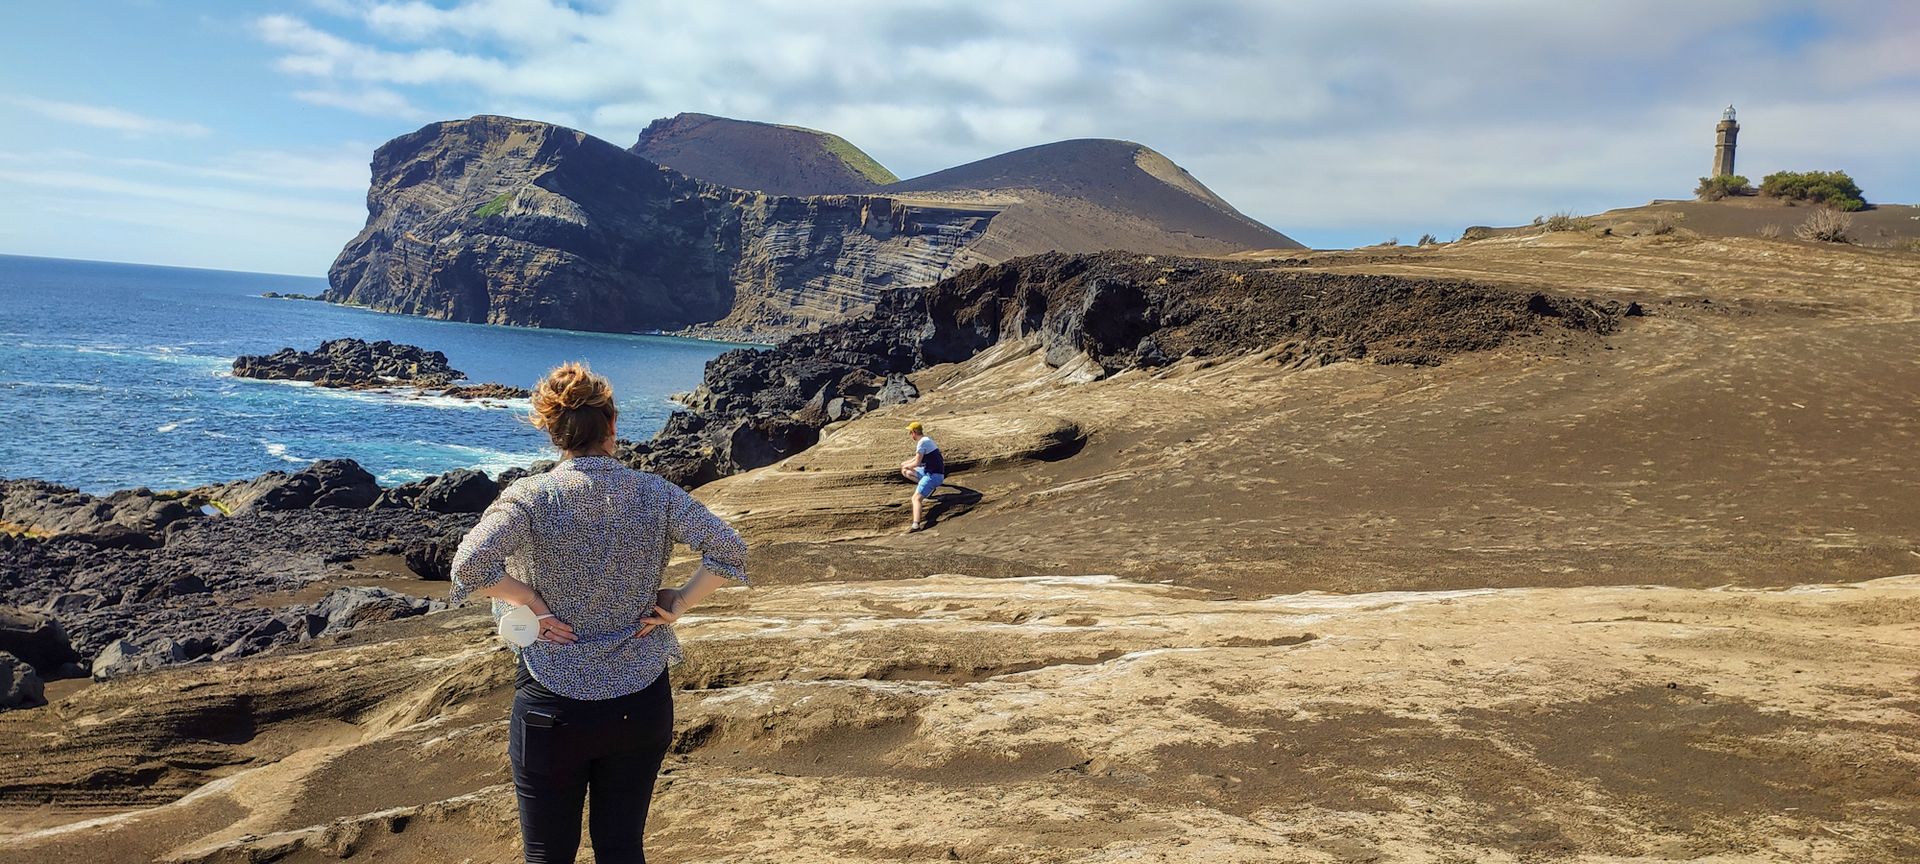 Visita ao Vulcão dos Capelinhos nas nossas Excursões, Tours e Visitas Guiadas de dia inteiro na ilha do Faial Açores.